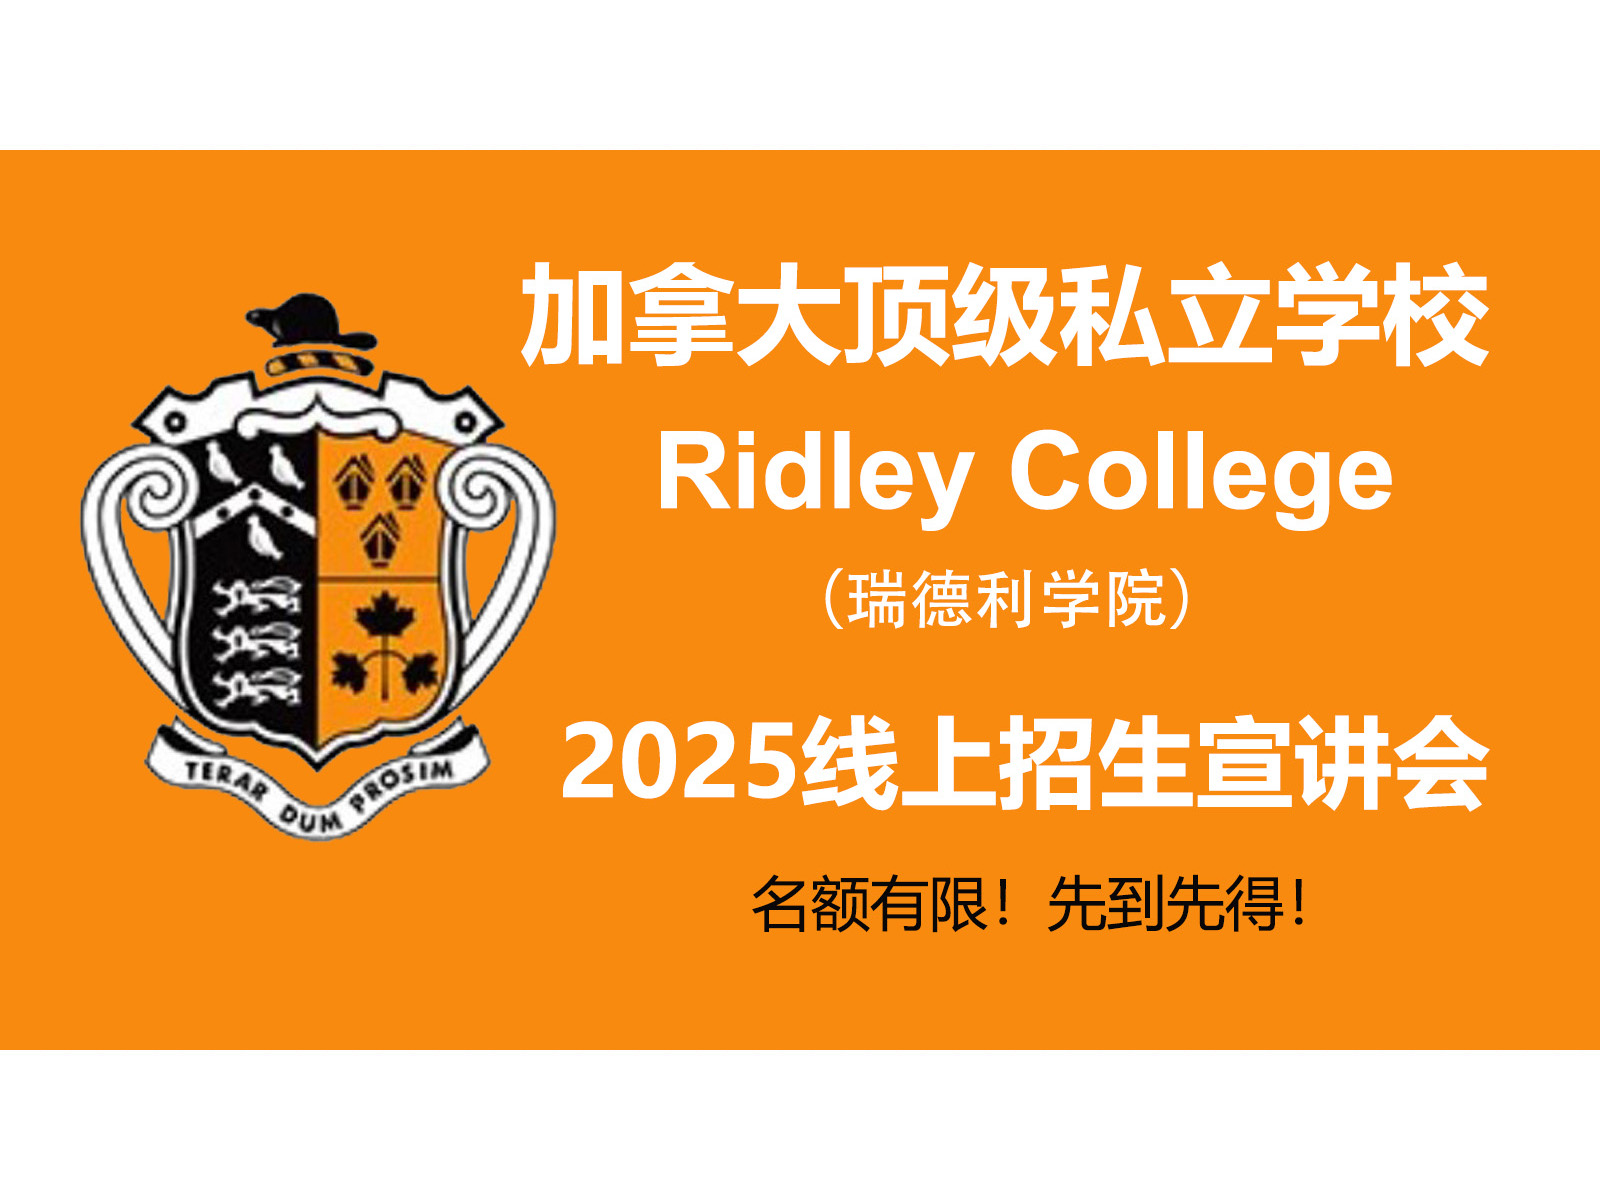 斯隆教育联合加拿大顶级私校Ridley College举办 2025年线上招生宣讲会